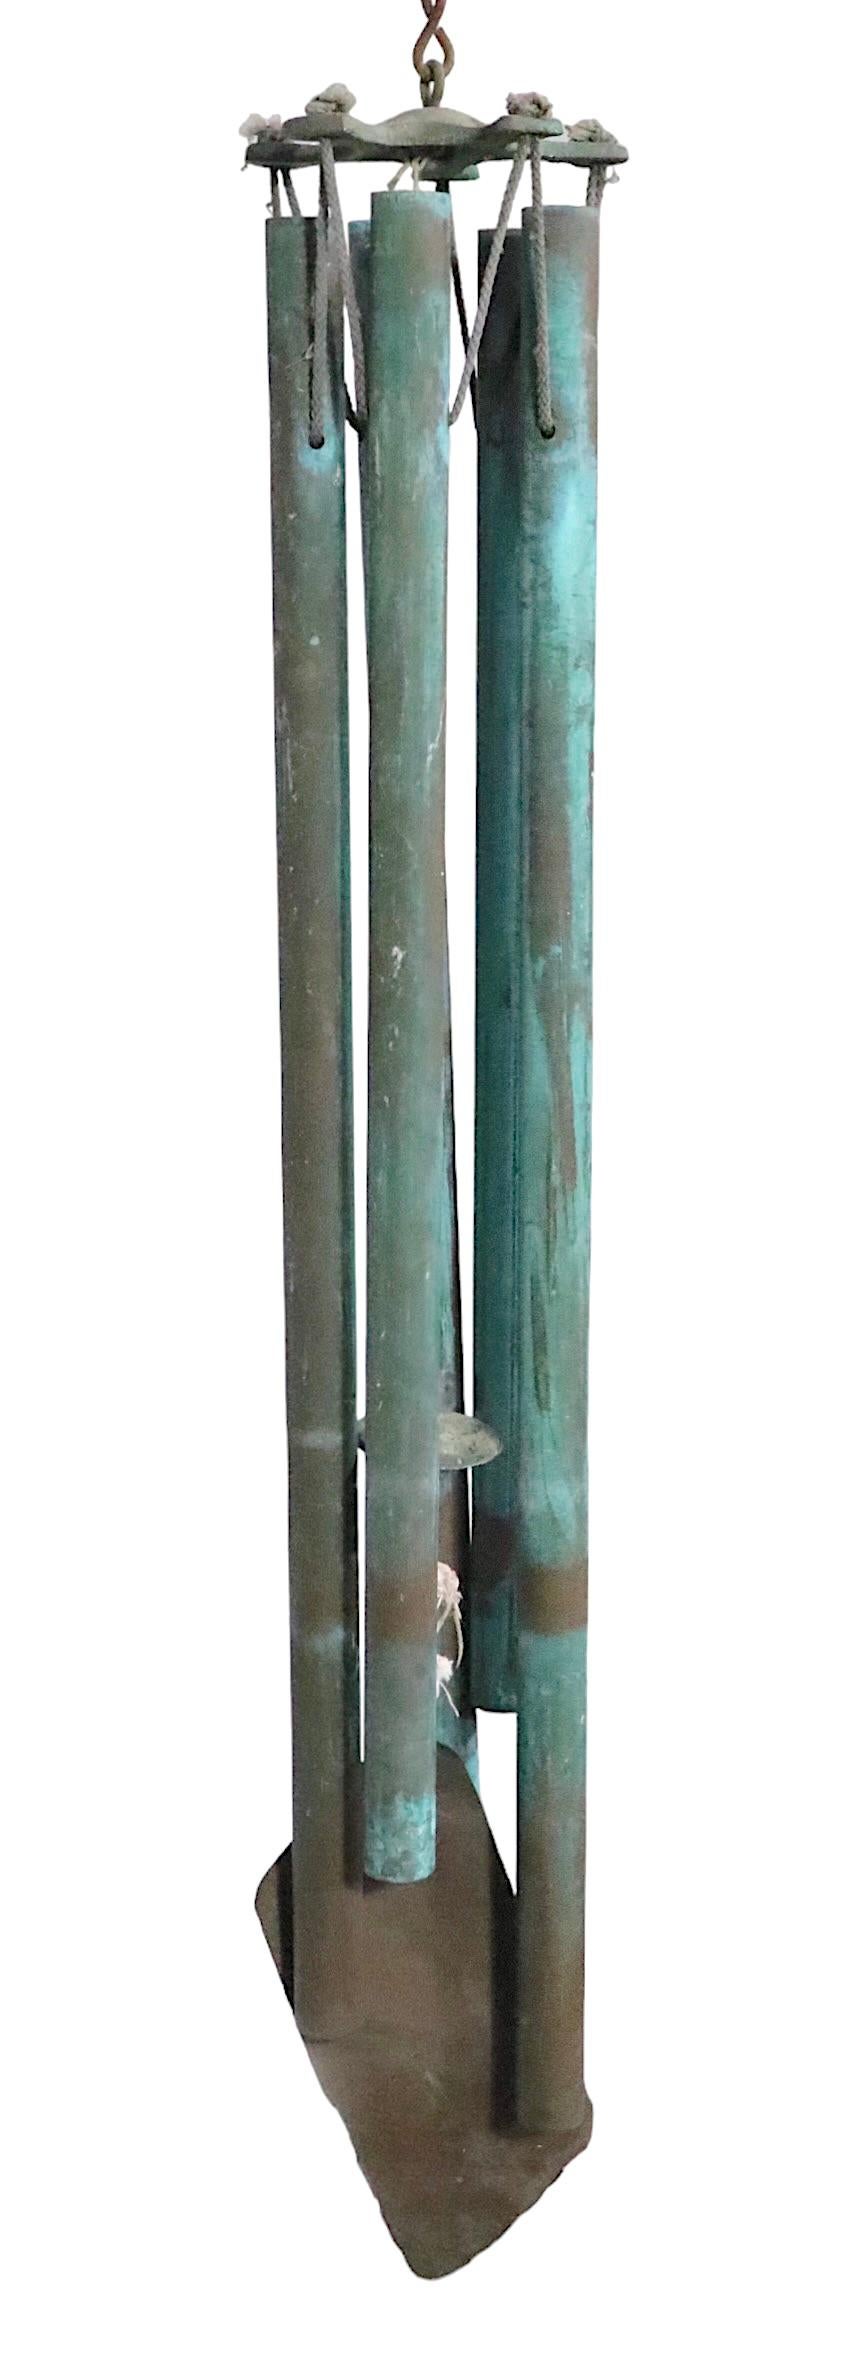 Carillons éoliens brutalistes en bronze vert-de-gris des années 1970. Ce carillon intriguant comporte cinq tuyaux suspendus de différentes longueurs, qui créent une tonalité apaisante lorsque le vent souffle. Parfait ajout de style Brutalist du